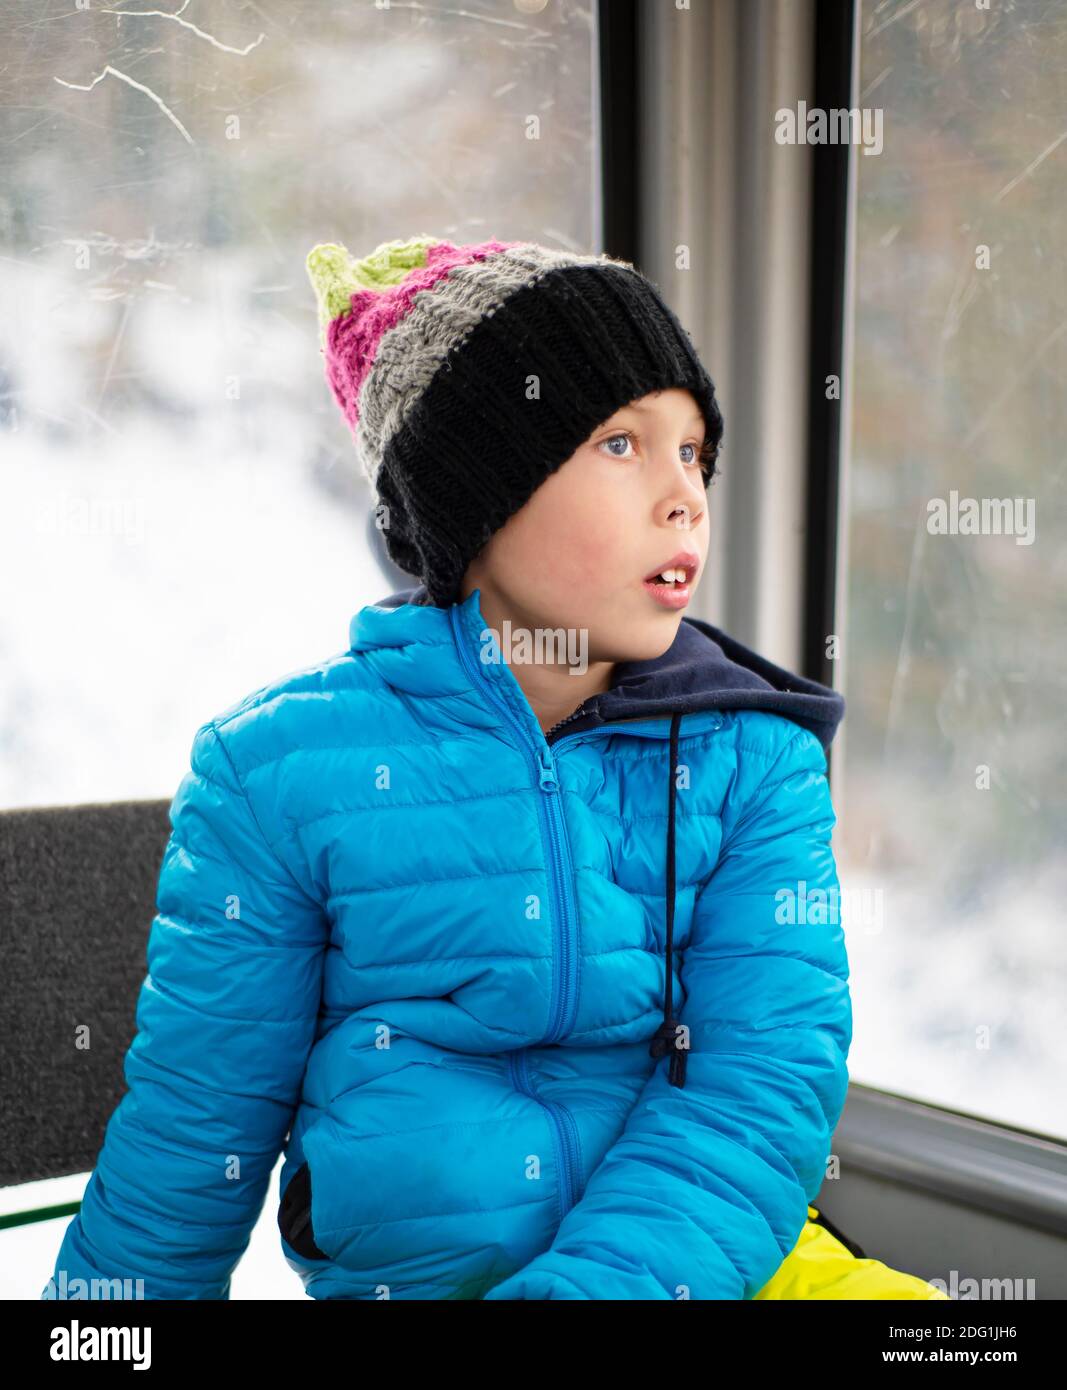 Un niño con una chaqueta azul y un sombrero de punto se sienta en una cabina junto a la ventana de invierno y los sueños. Sus ojos azules miran a la distancia. Mirada pensiva. Foto de stock